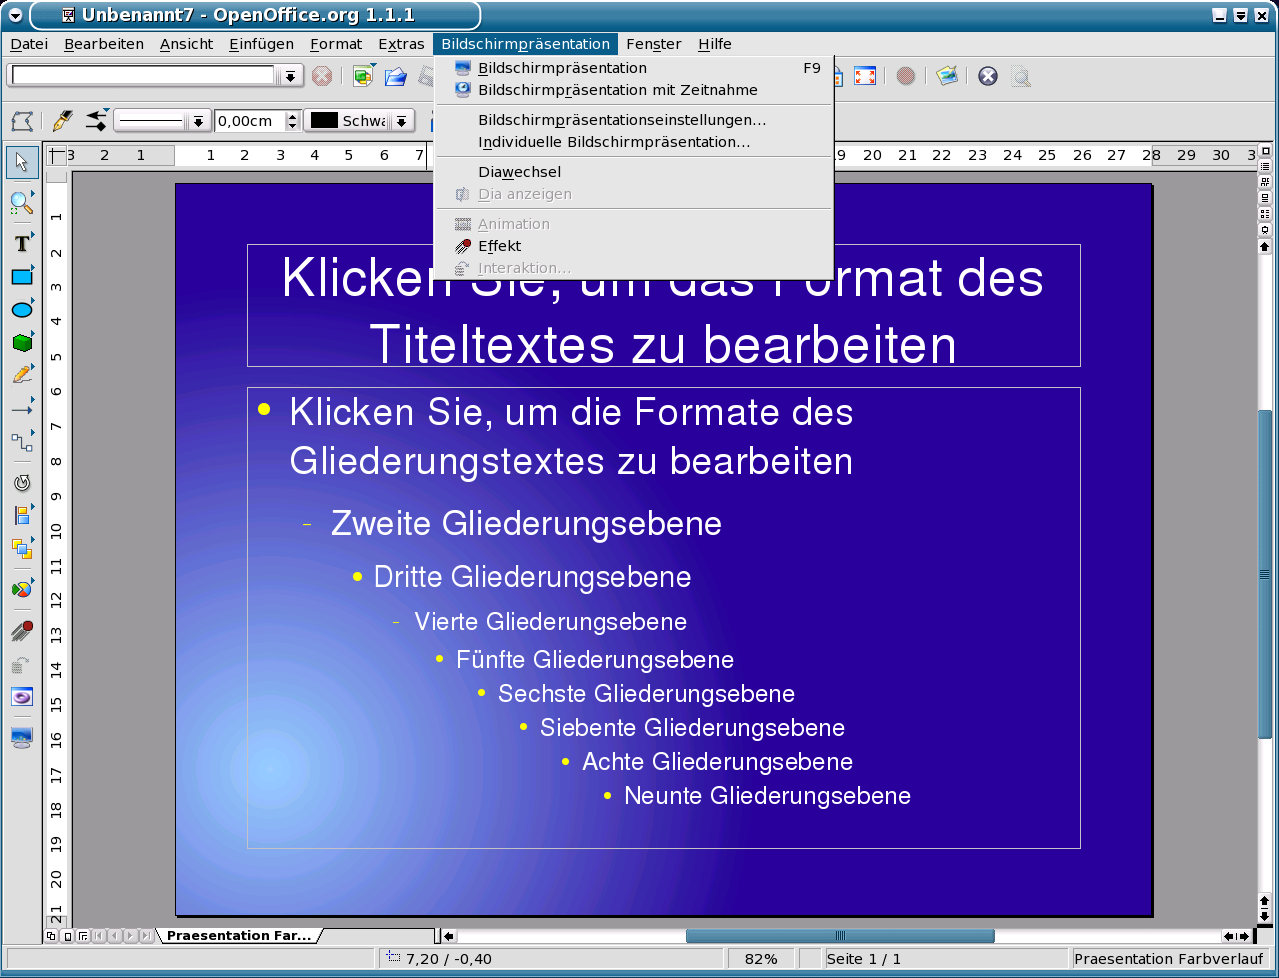 OPENOFFICE Скриншоты. OPENOFFICE. Open Office screenshots. Openoffice linux